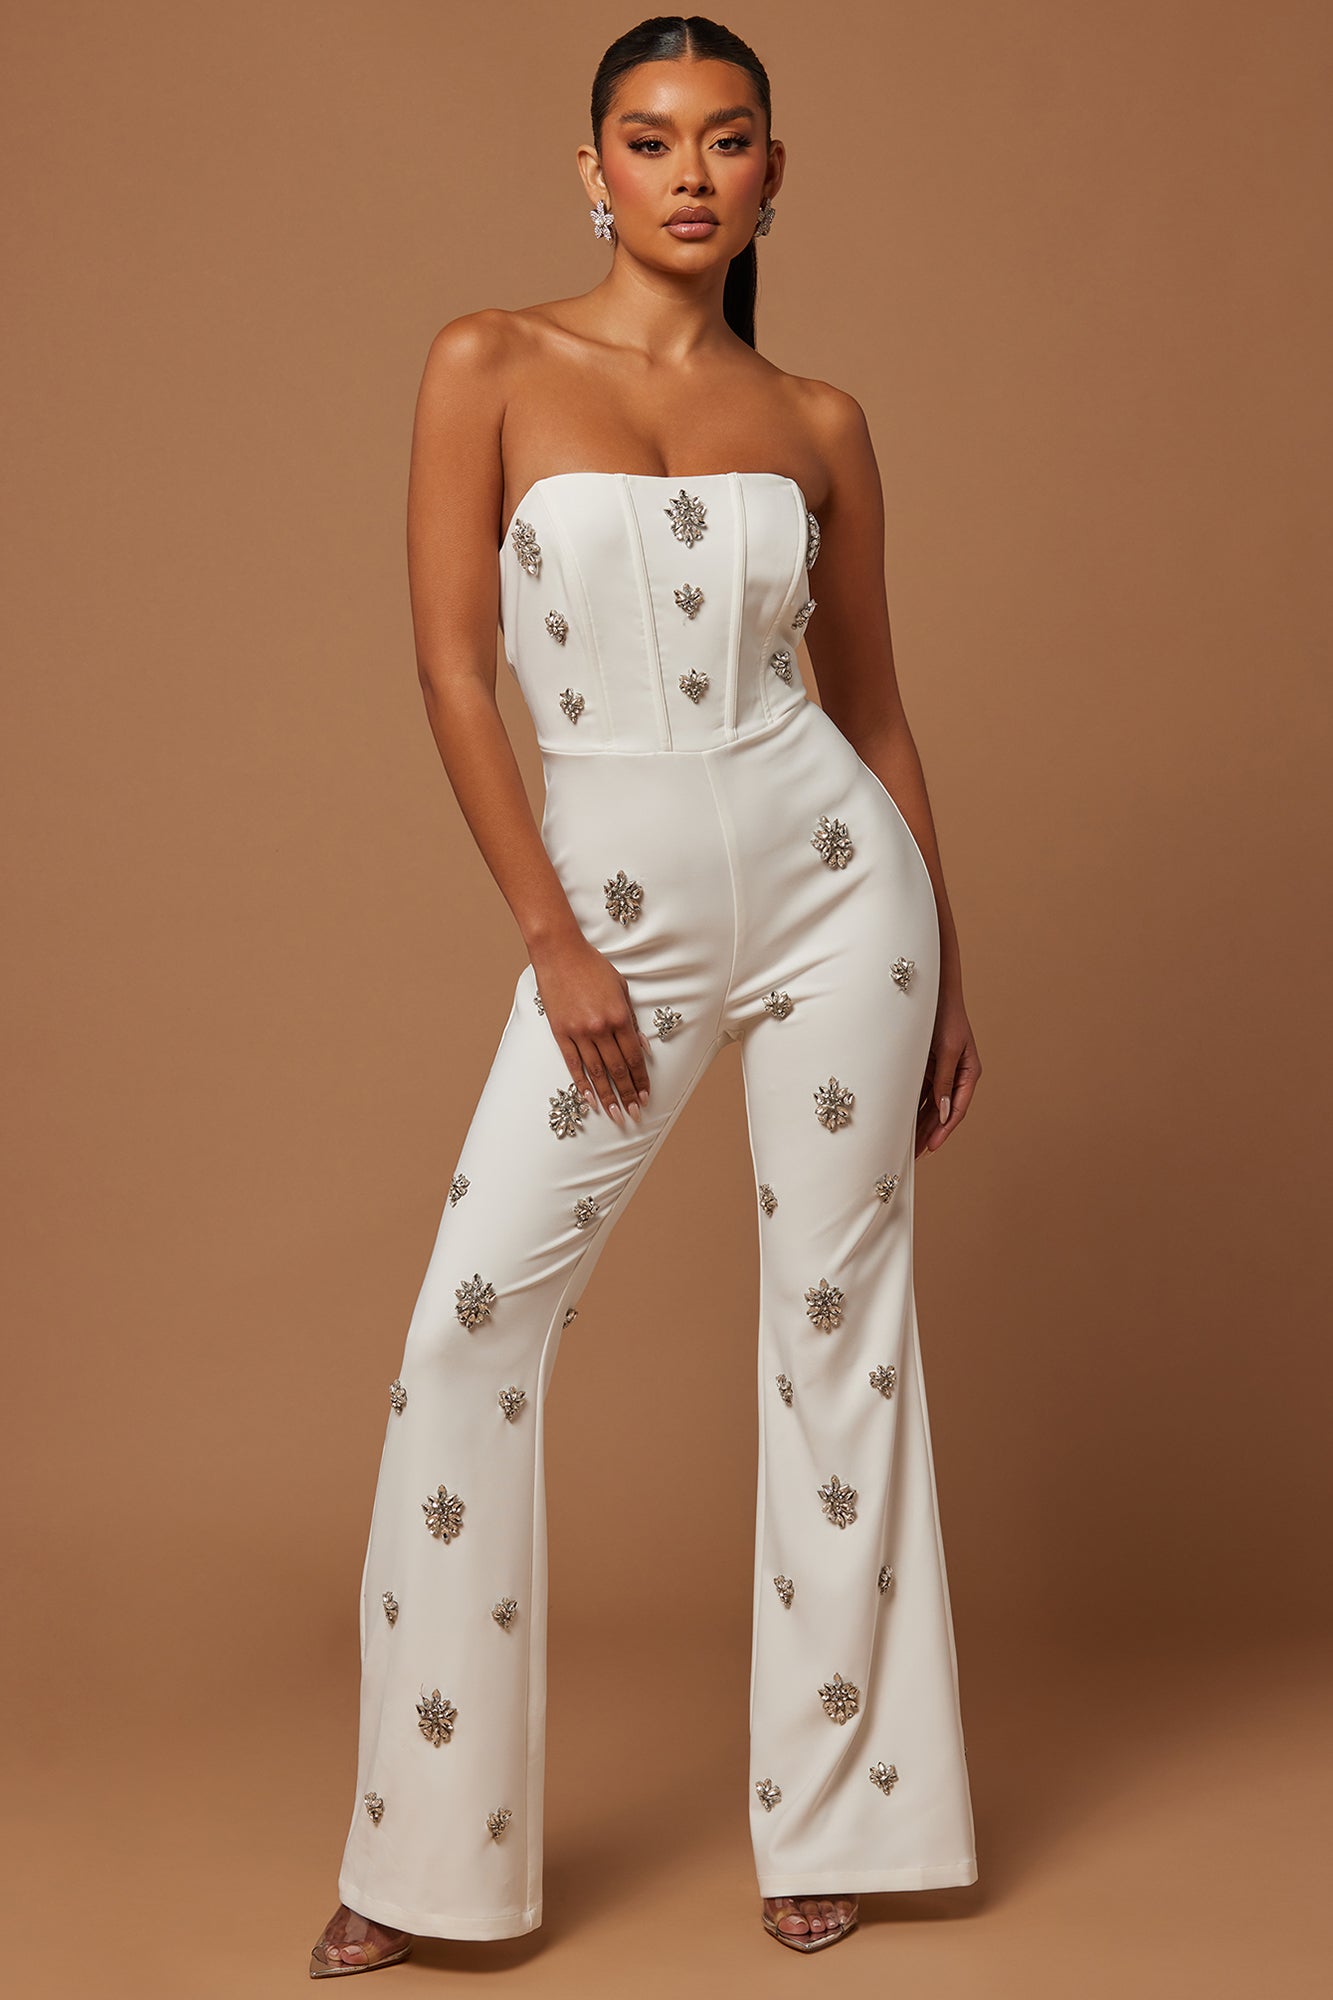 Leandra Embellished Flare Jumpsuit - White, Fashion Nova, Luxe